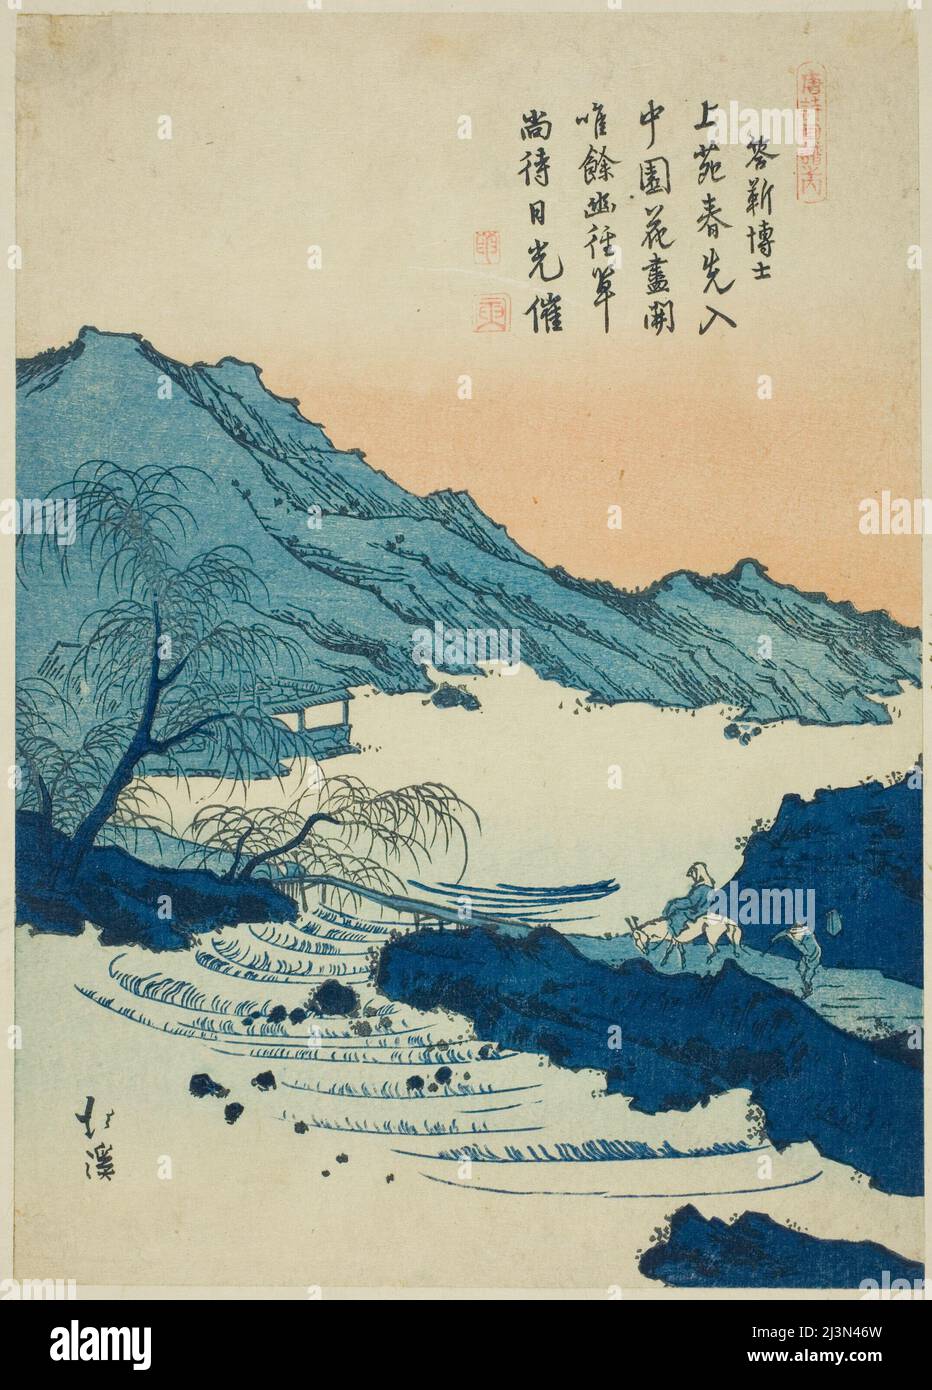 Illustrazione di un poema cinese, dalla serie "Picture Book of Chinese Poems (Toshi gafu no uchi)", c. 1830/44. Foto Stock